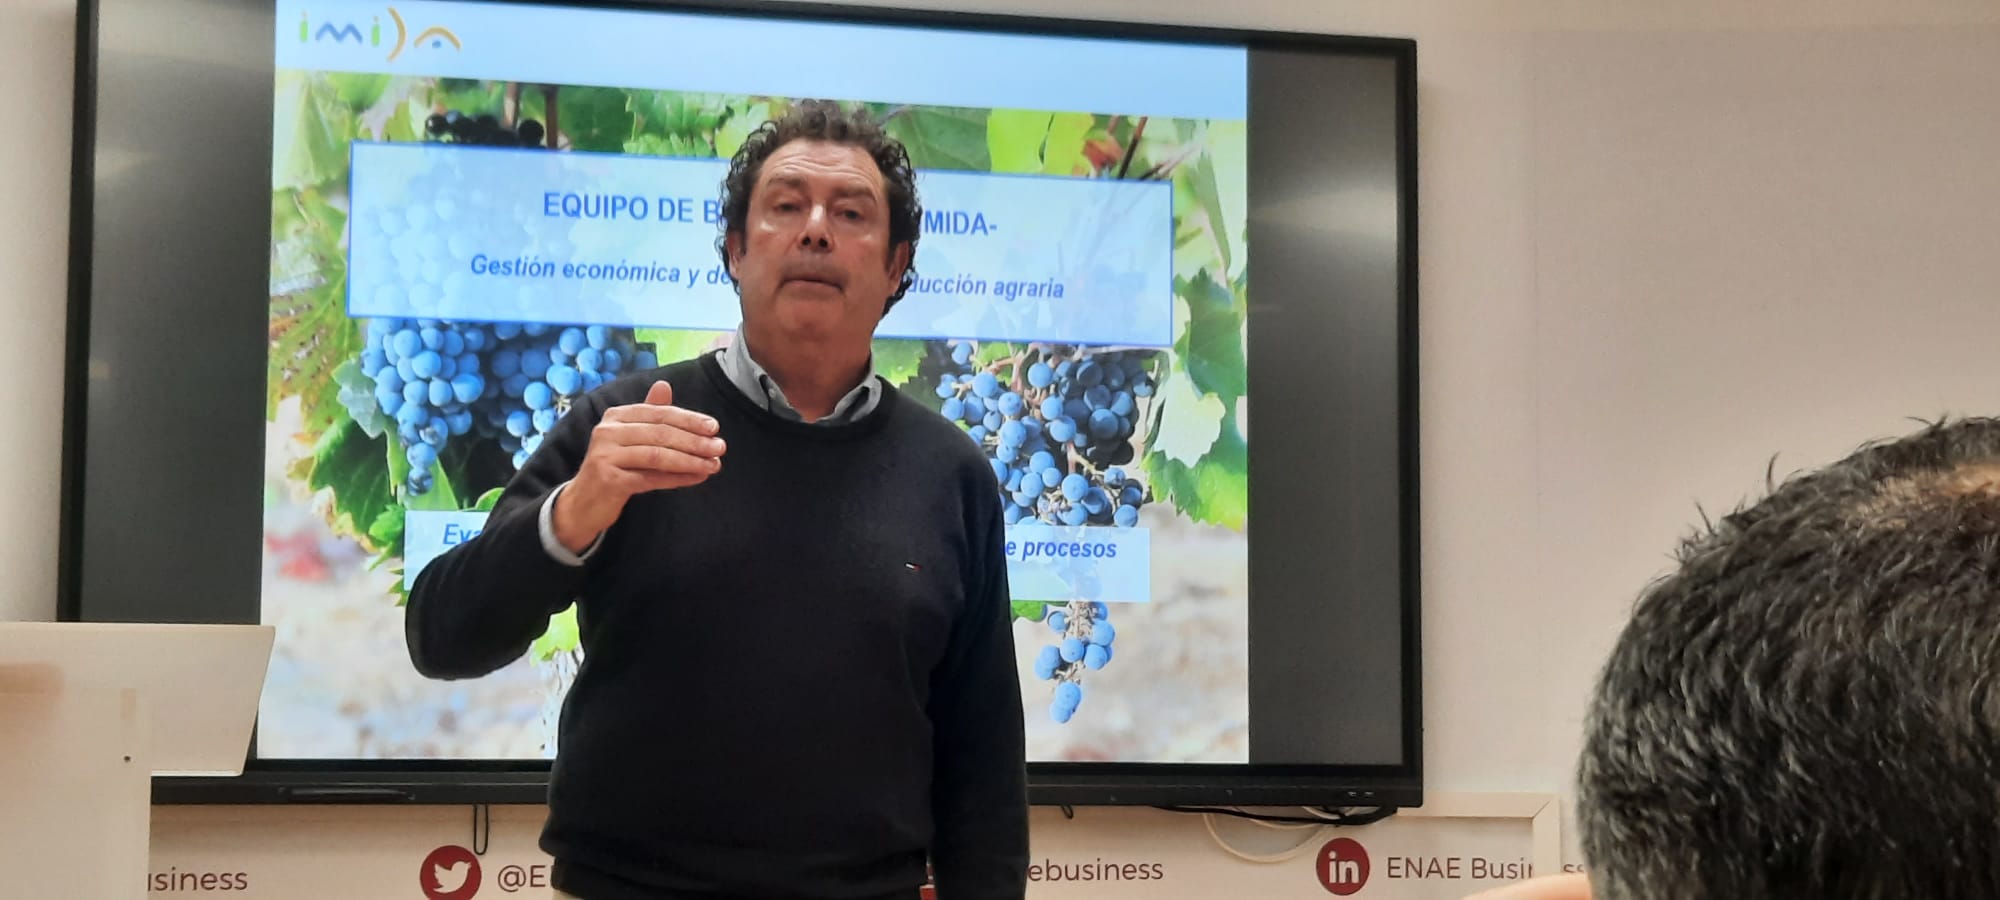 José García García, investigador del Equipo de Bioeconomía del IMIDA, en su ponencia sobre Tendencias y Gestión de Costes en la Producción Agrícola